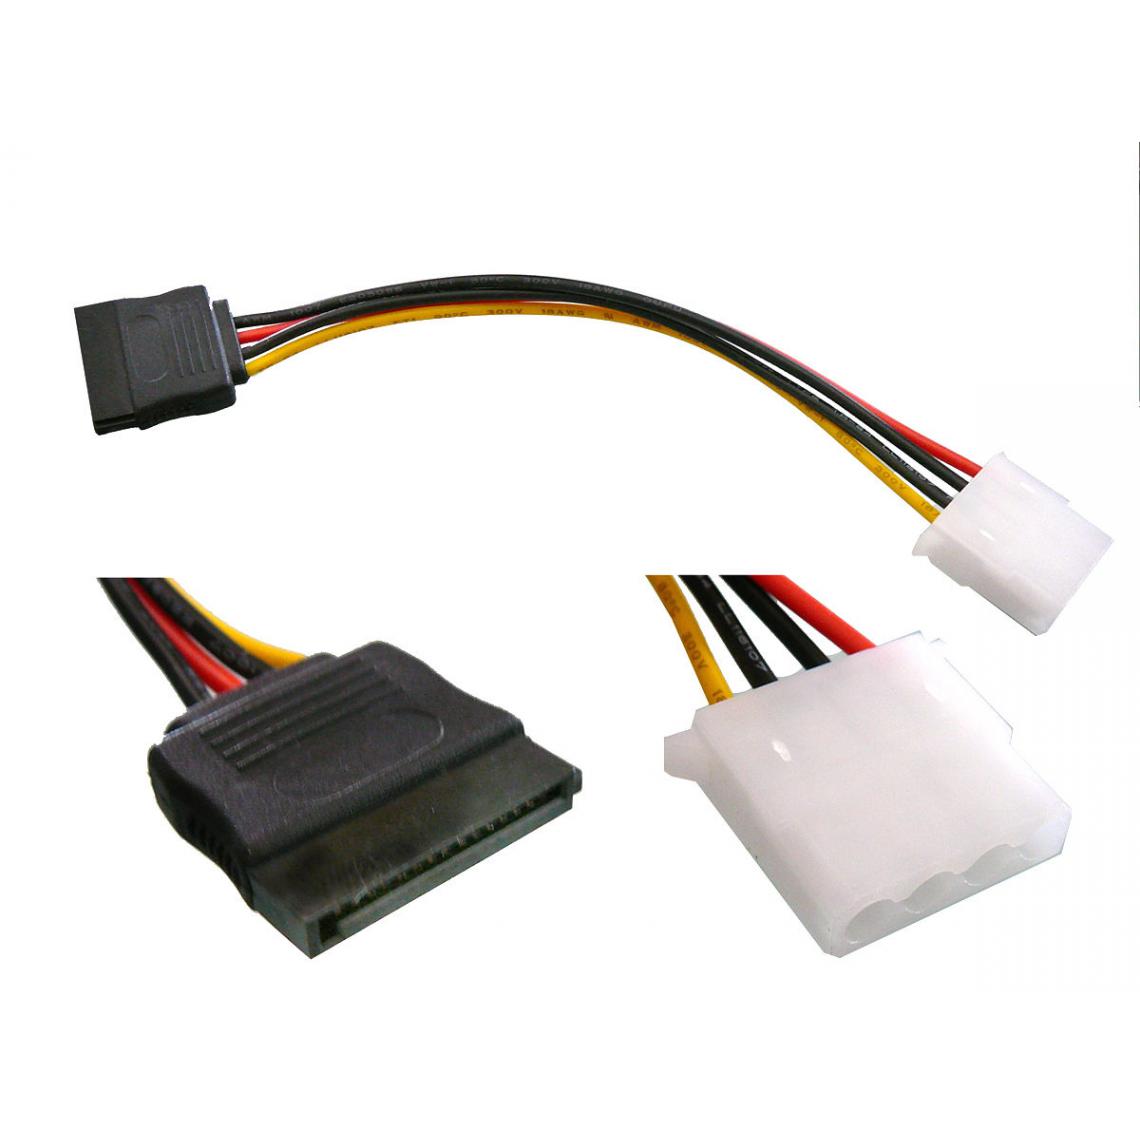 Kalea-Informatique - Cordon Adaptateur Molex Femelle - SATA Femelle Pour connecteur d'alimentation de périphérique SATA Pour connecteur d'alimentation de périphérique SATA - Accessoires SSD